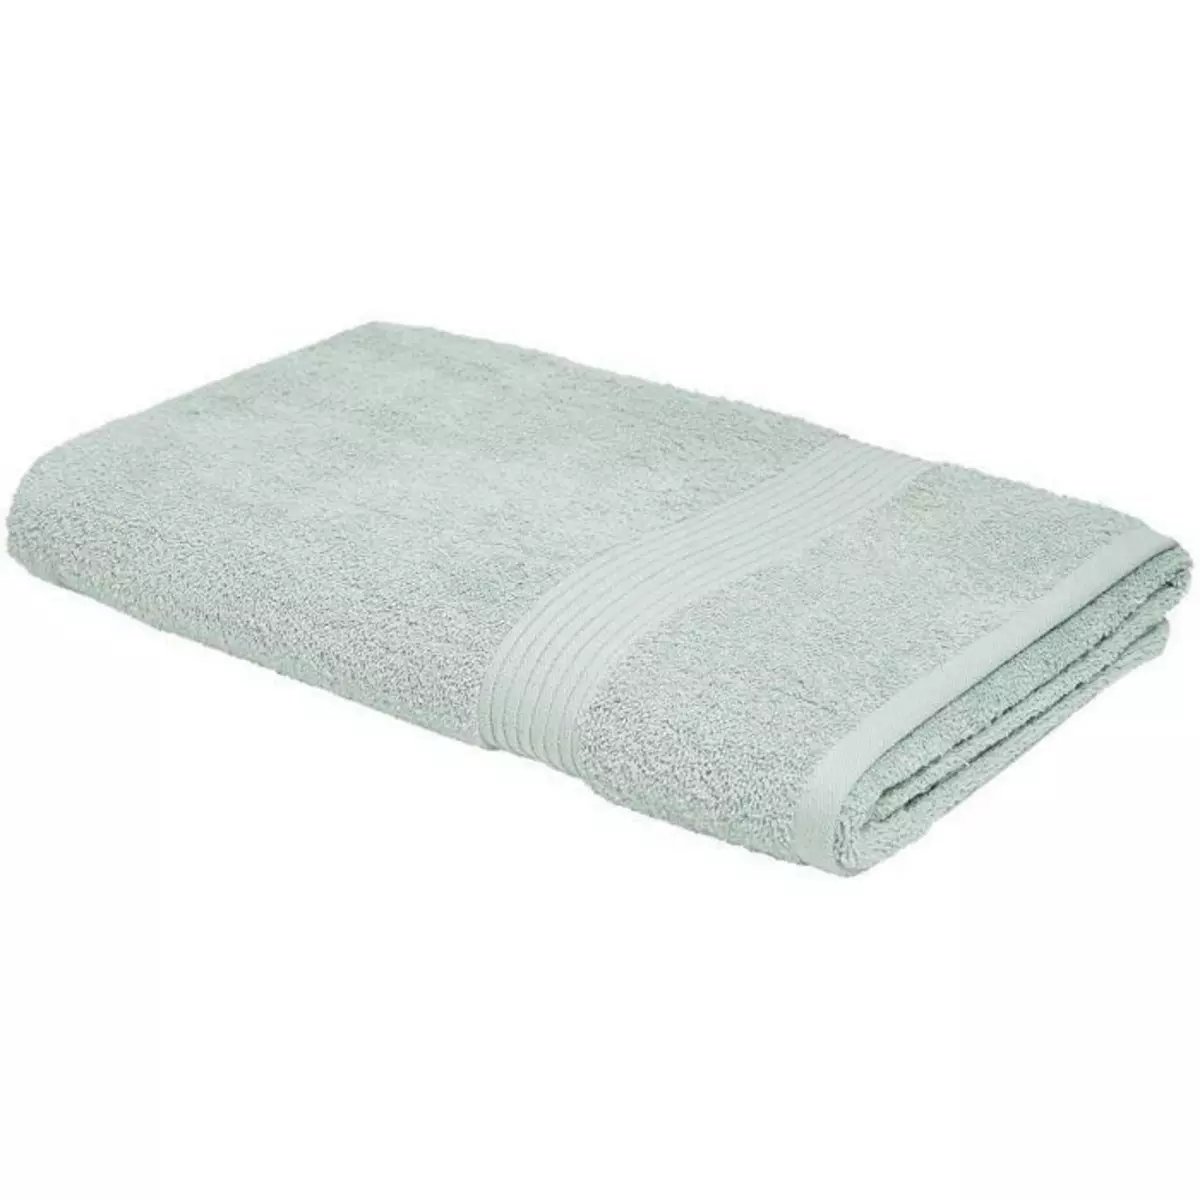  TODAY Essential - Lot de 10 serviettes de toilette 50x90 cm 100% Coton coloris céladon